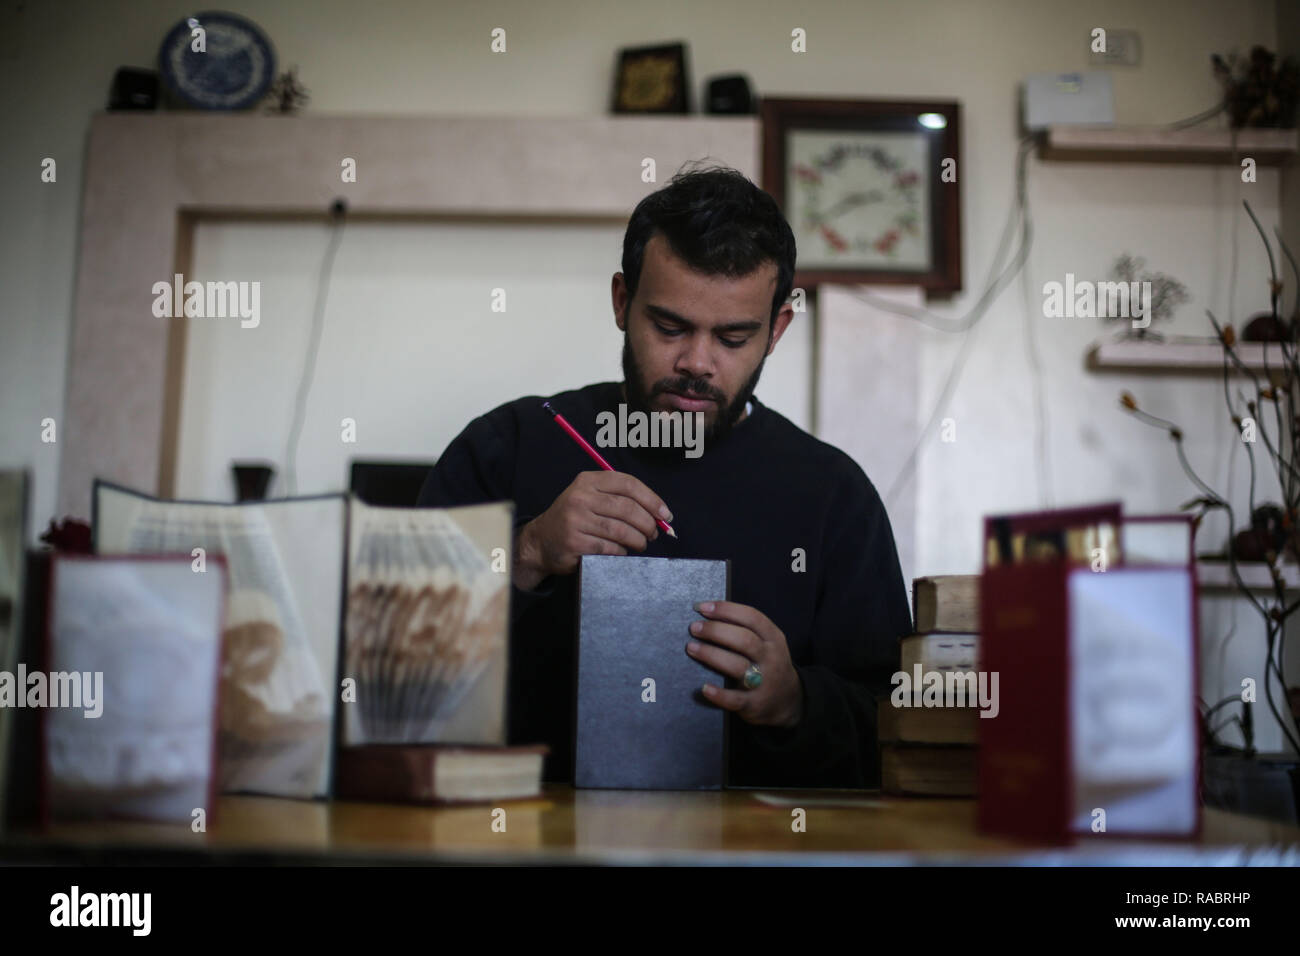 La striscia di Gaza. 31 Dic, 2018. Ahmed Humaid, 28, ripiega a fogli di carta per creare forme e parole dentro la sua casa in Nusseirat Refugee Camp nella zona centrale della striscia di Gaza, a Dic. 31, 2018. Un disoccupati giovani palestinesi l uomo da un campo profughi nella Striscia di Gaza si trova un modo creativo per la lotta contro la disoccupazione tramite l'apprendimento Origami, o la tecnica di piegatura della carta, online. Credito: Stringer/Xinhua/Alamy Live News Foto Stock